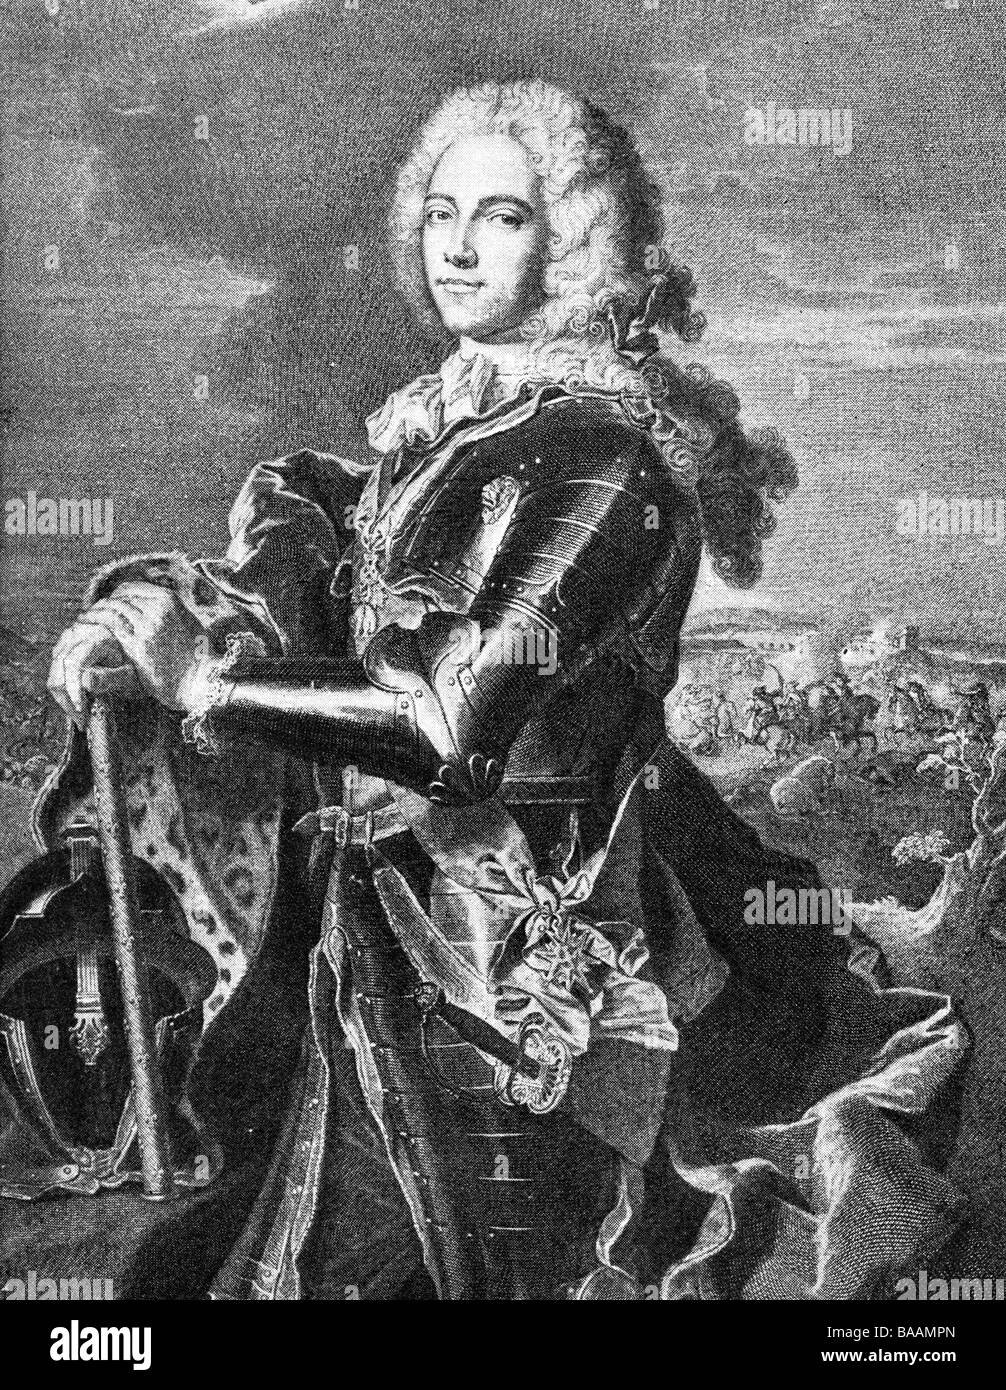 Fouquet, Louis Charles Auguste, 22.9.1684 - 26.1.1761, duc de Belle-Isle, général français, demi-longueur, gravure sur cuivre par J.G. Wille, après peinture par Hyacinthe Rigaud, 1742, l'artiste n'a pas d'auteur pour être effacé Banque D'Images